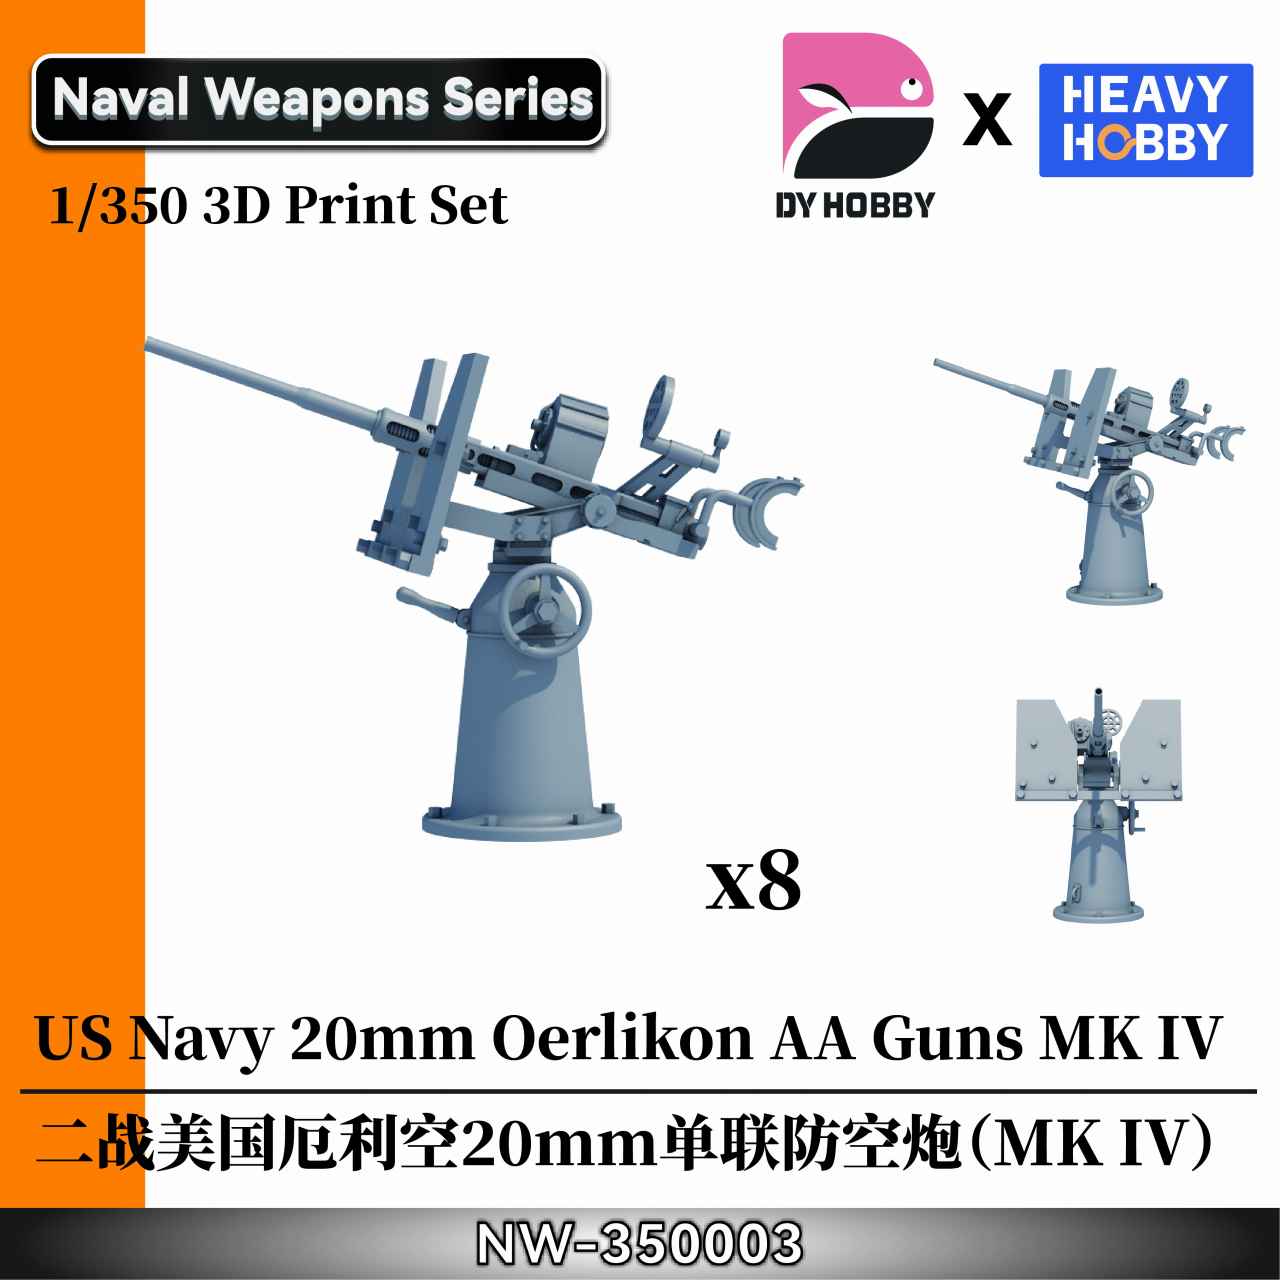 【新製品】NW-350003 1/350 WWII アメリカ海軍 エリコン 20mm 単装機関砲 (MK IV)